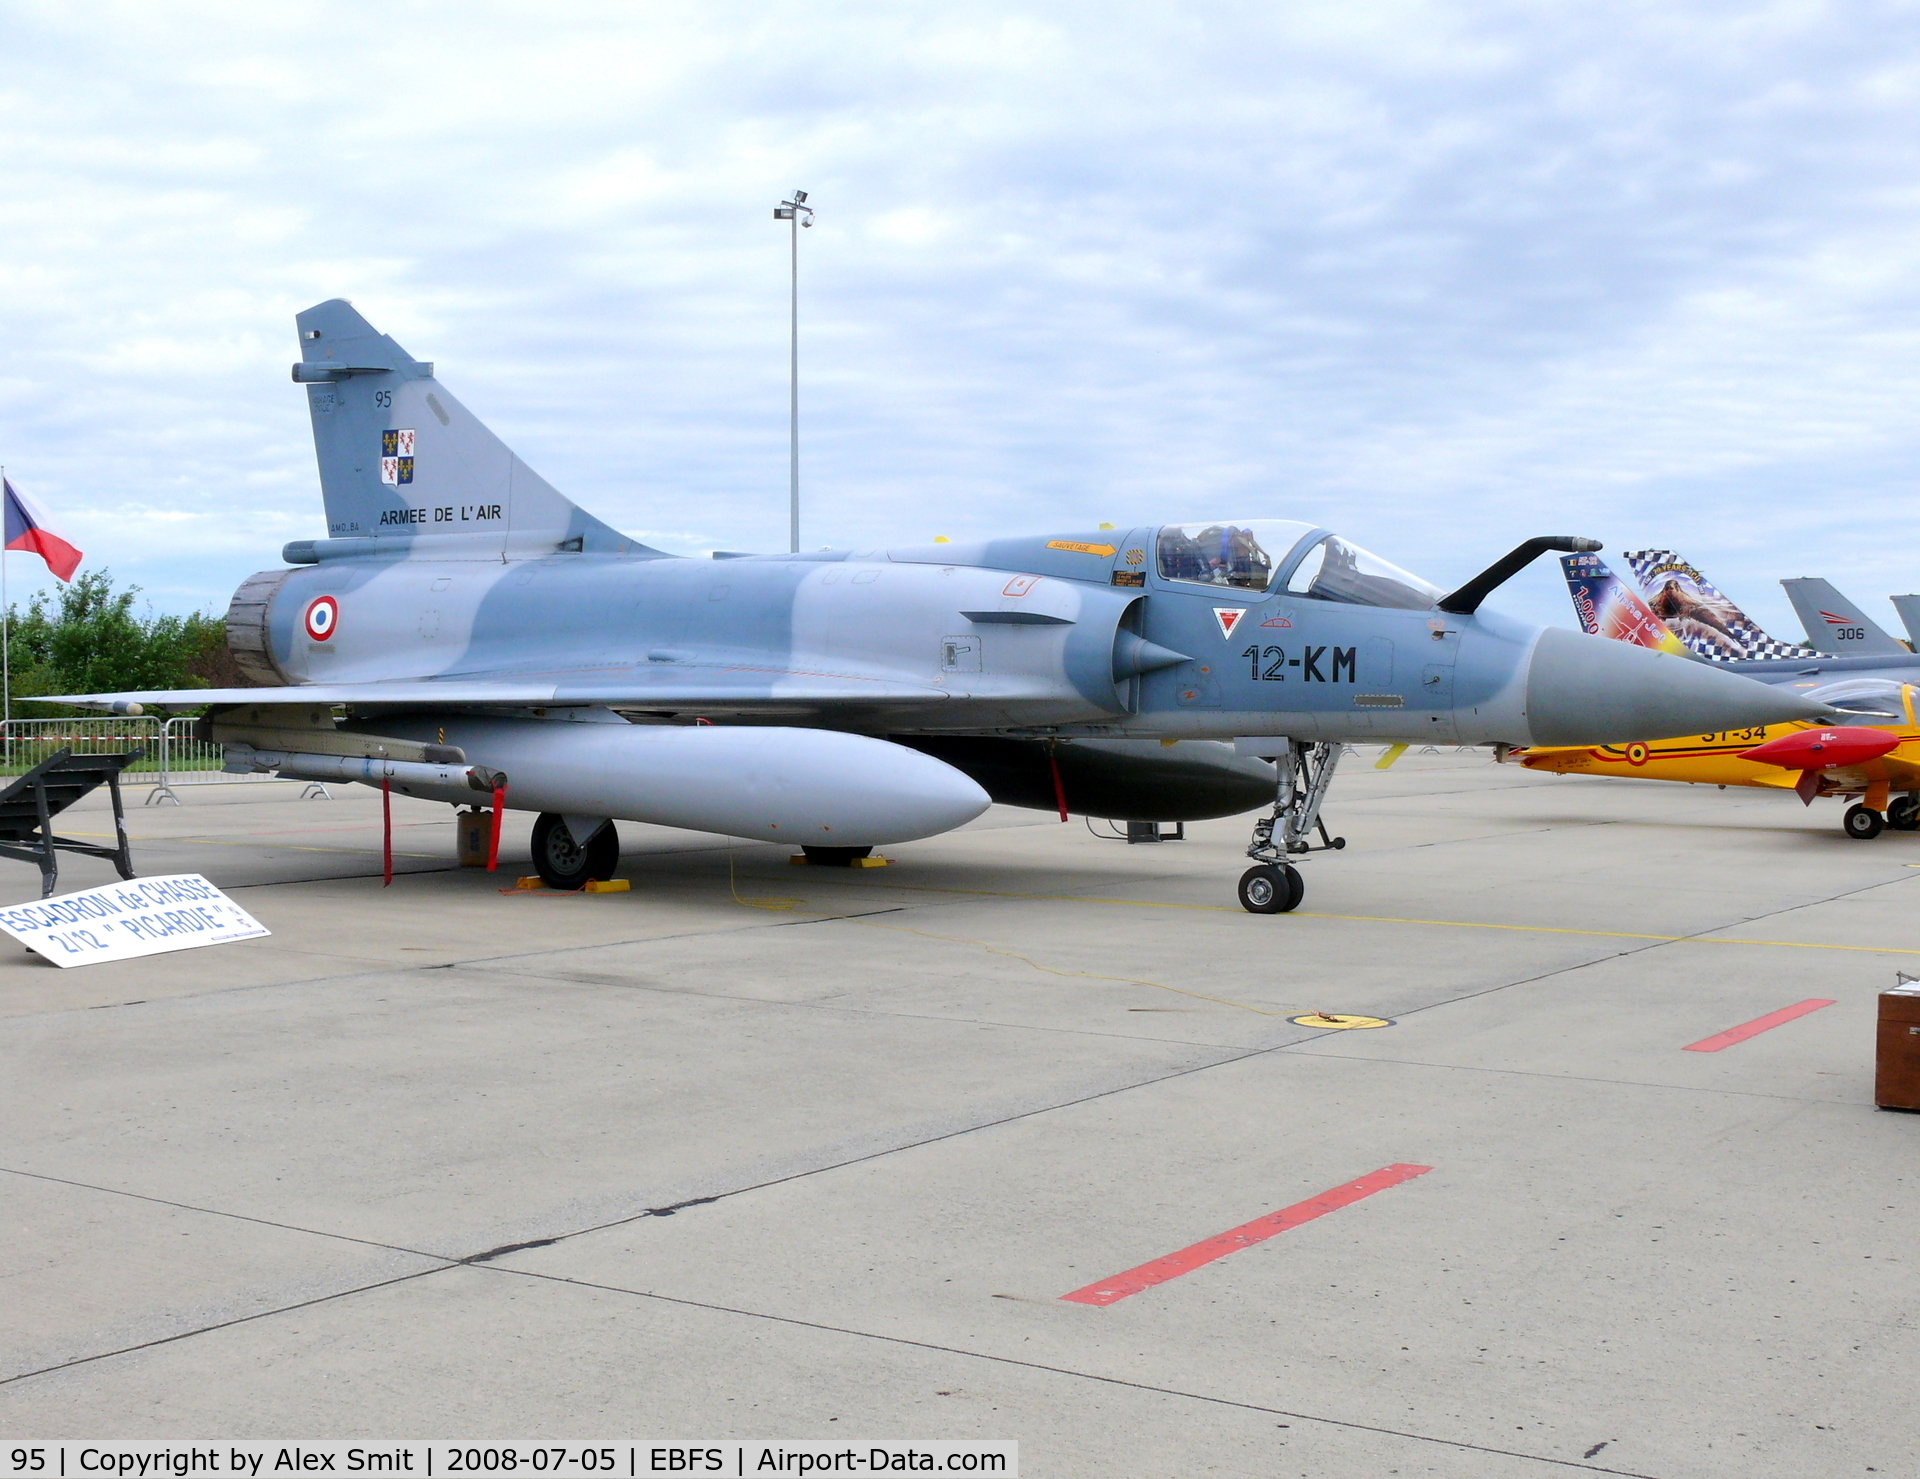 95, Dassault Mirage 2000C C/N 353, Dassault Mirage 2000C 95/12-KM French Air Force